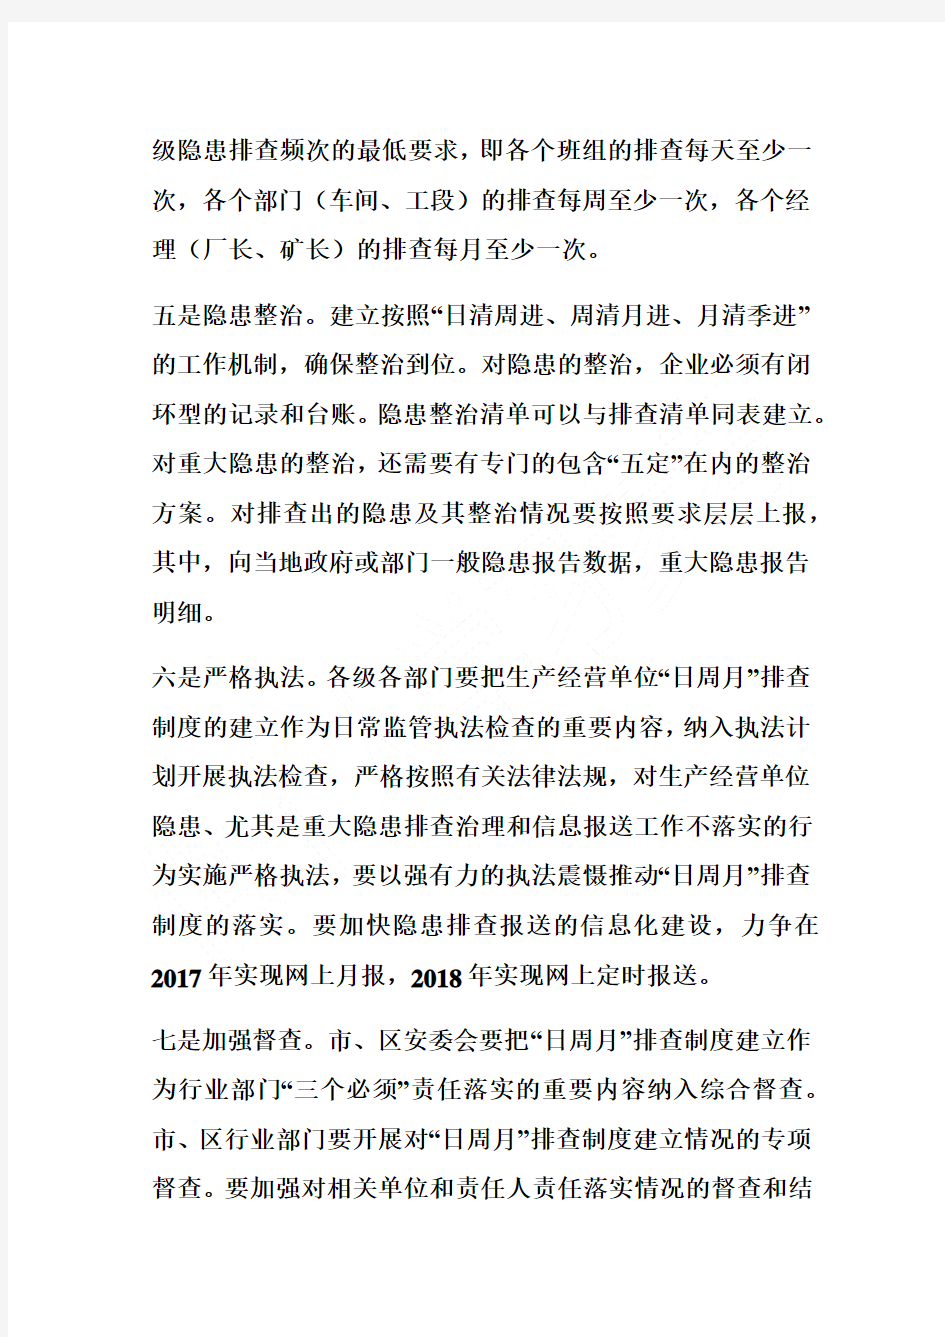 重庆市制定印发生产经营单位事故隐患日周月排查治理制度实施方案